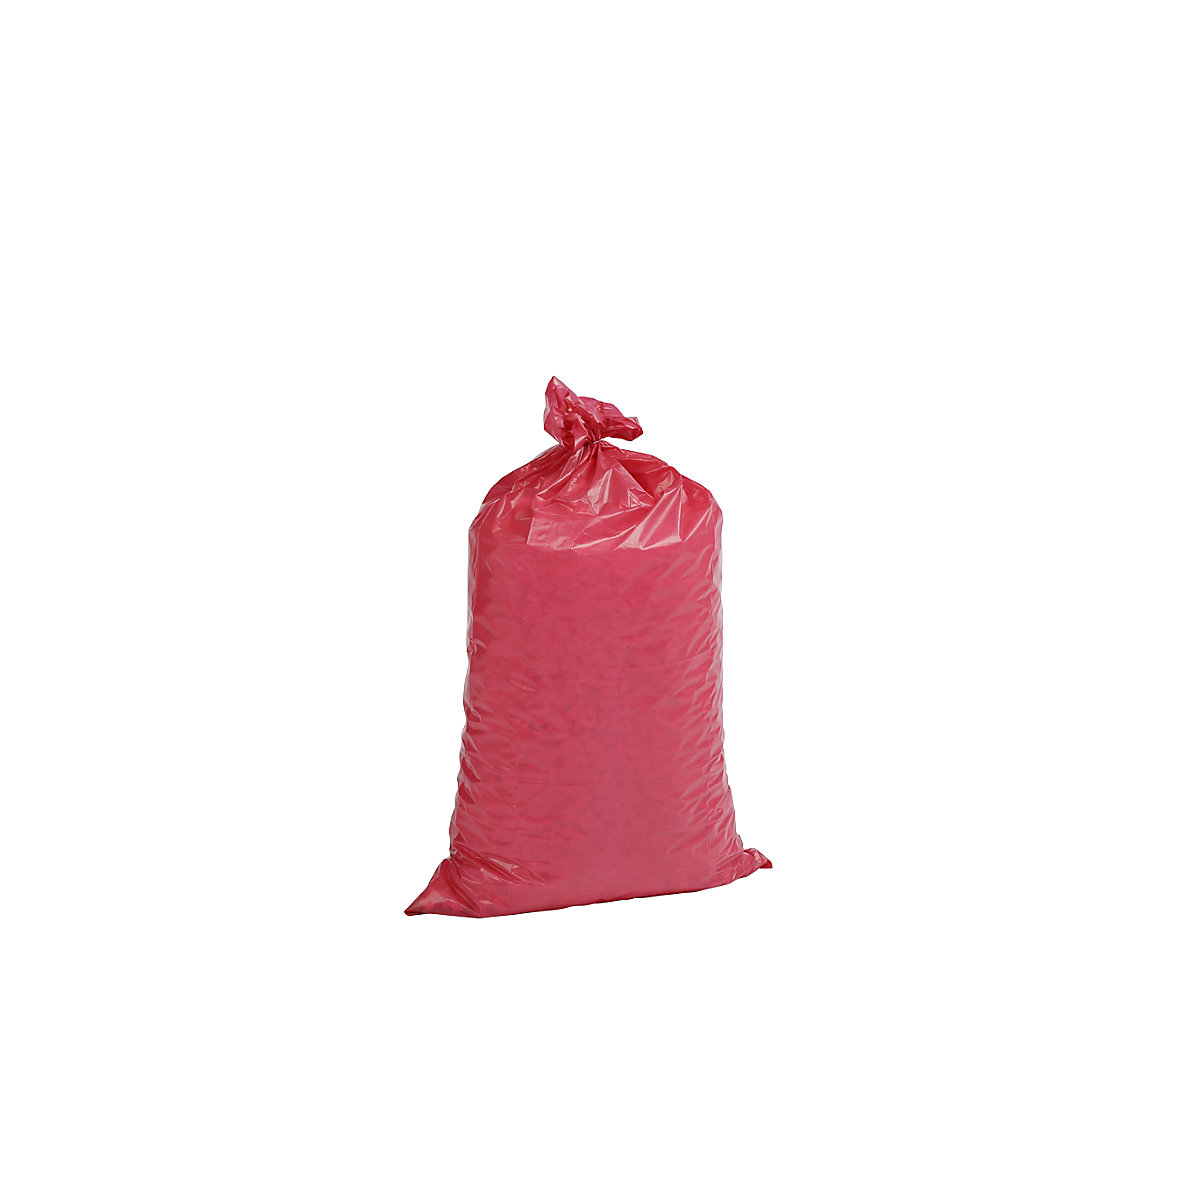 Szabványos hulladékgyűjtő zsákok, LDPE, 70 l, cs. e. 250 db, szé x ma 575 x 1000 mm, anyagvastagság 60 µm, piros